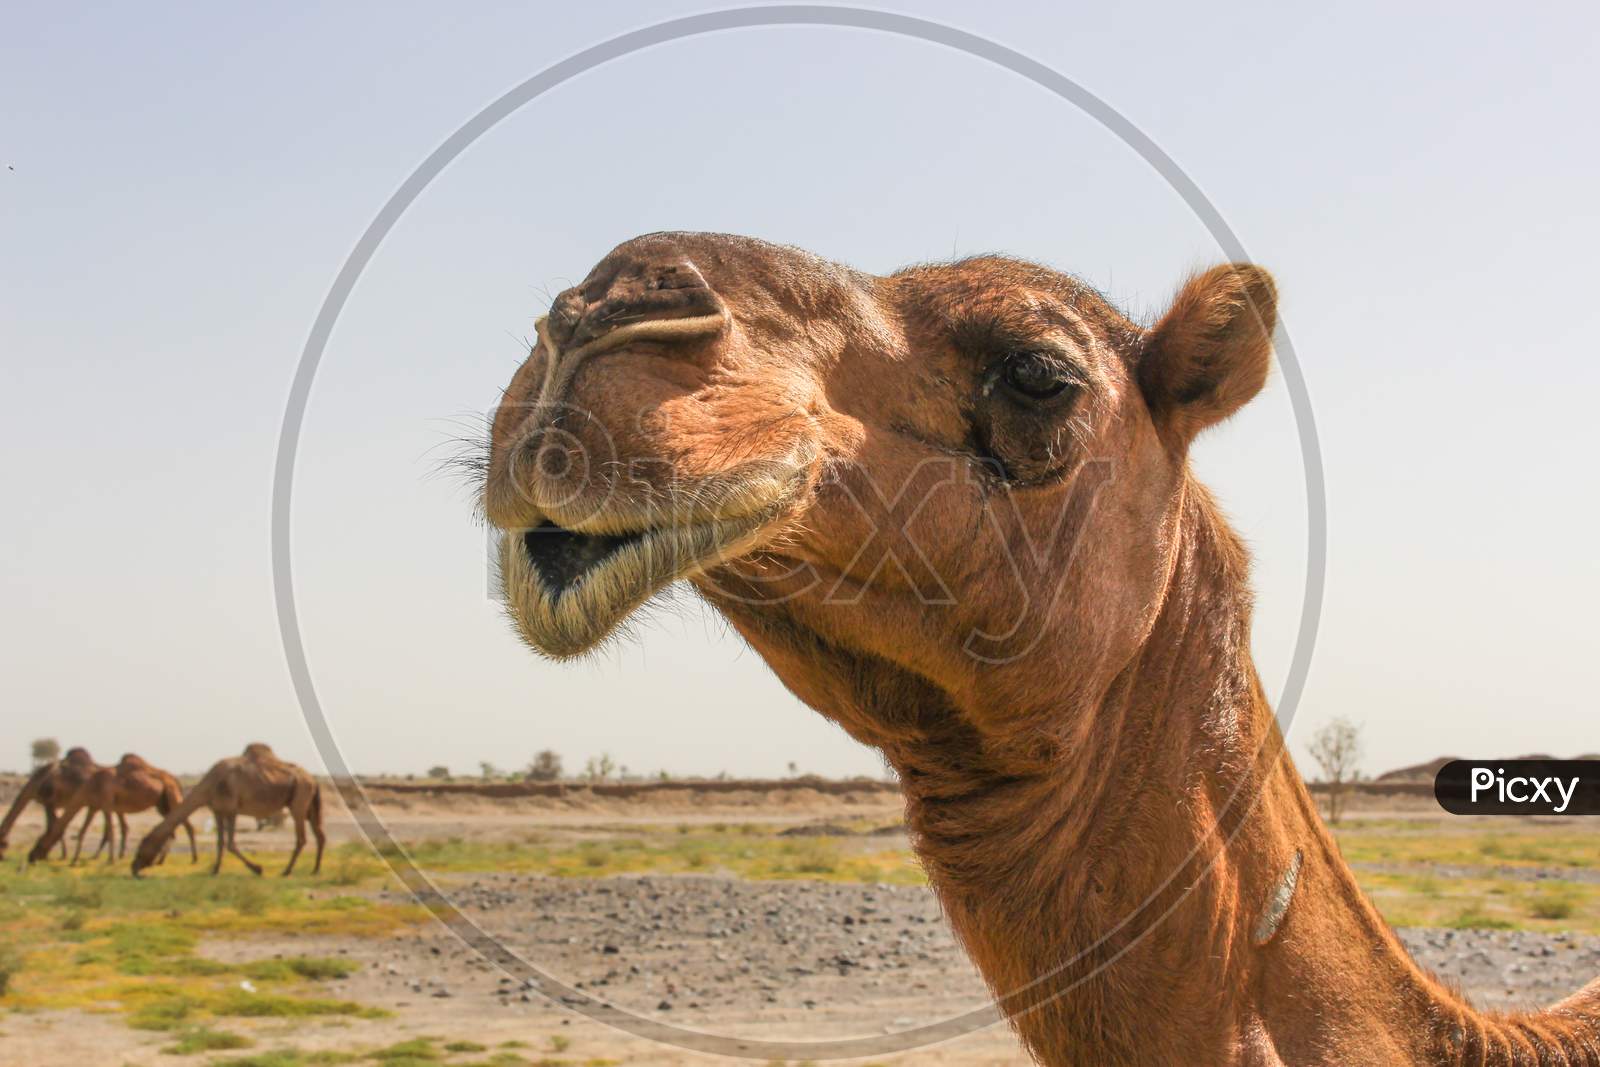 camels feeding in desert